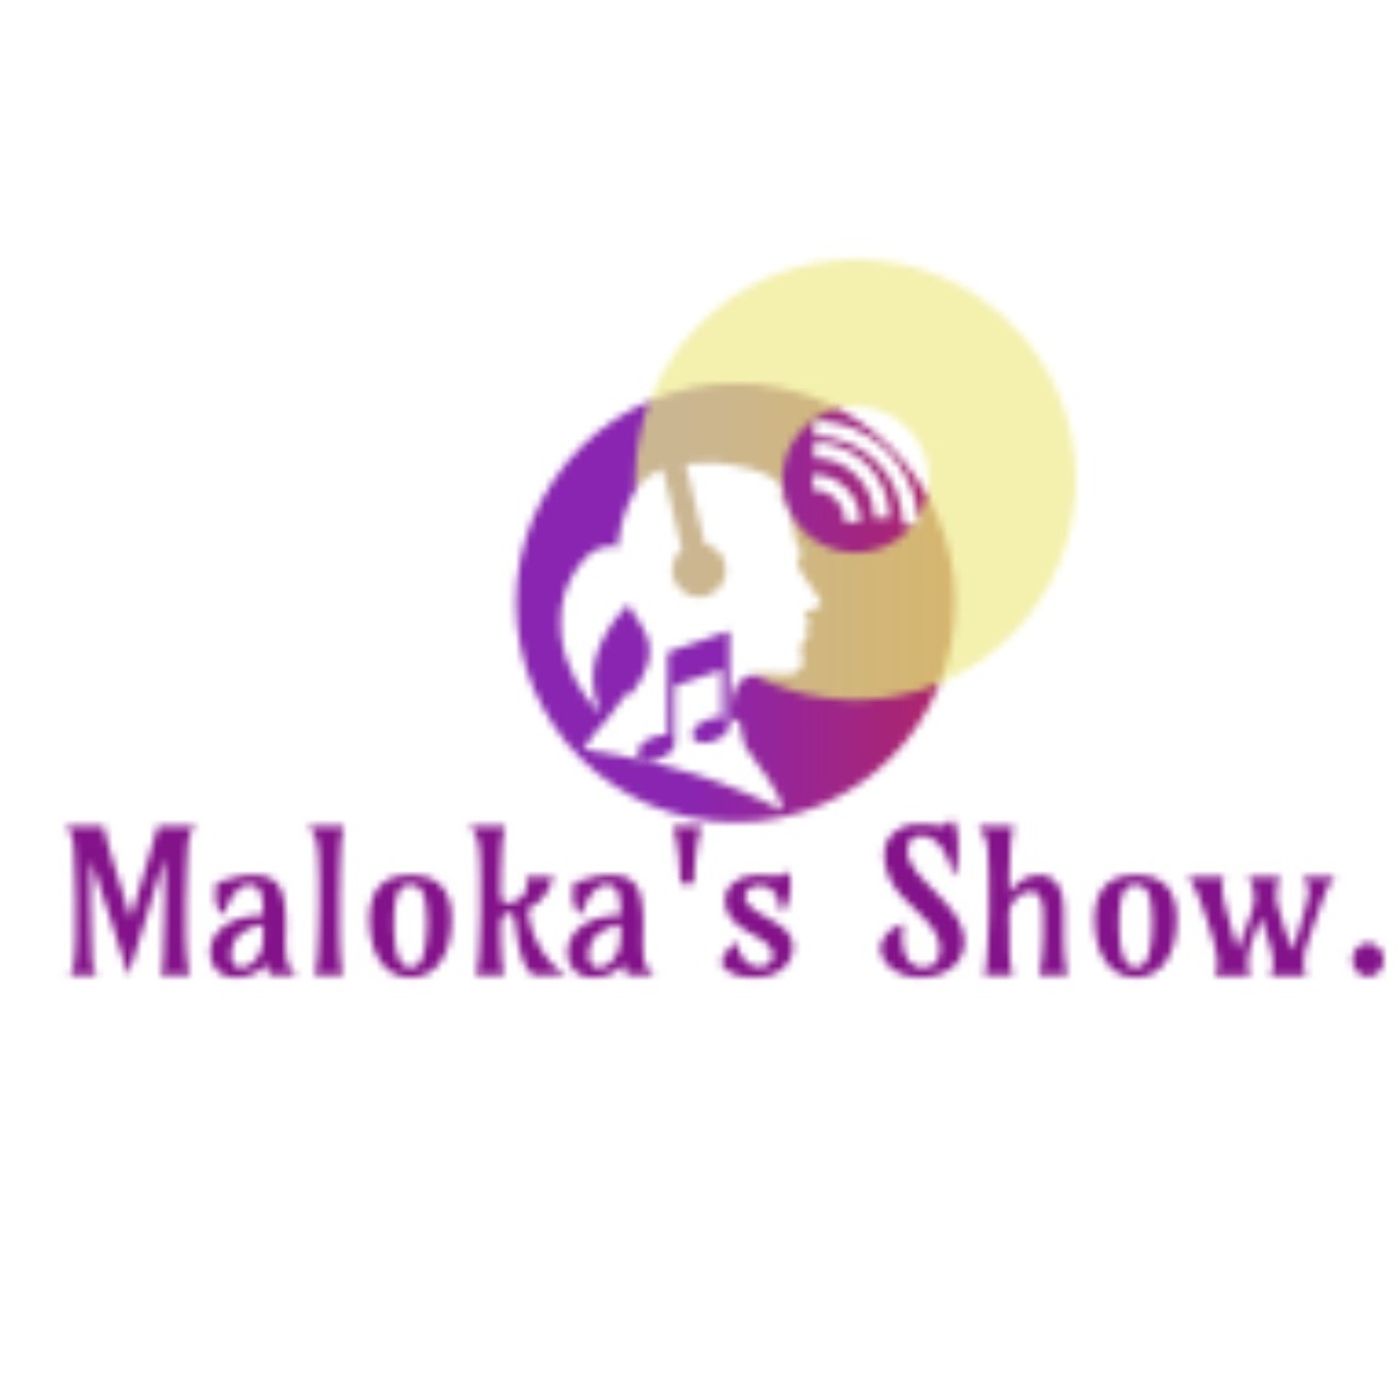 Maloka's show